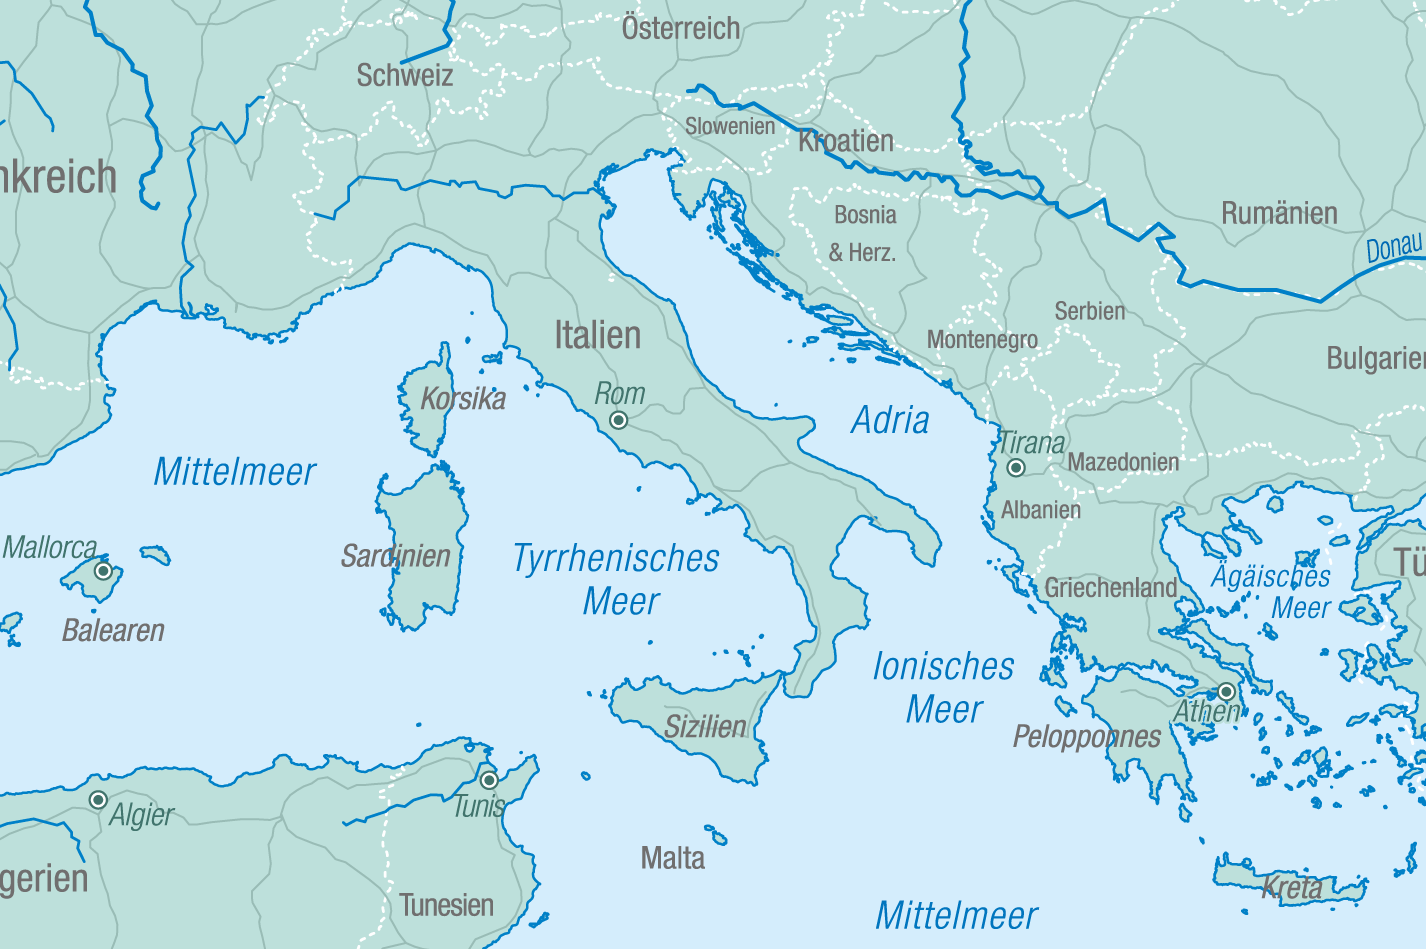 Yachtcharter Mittelmeer